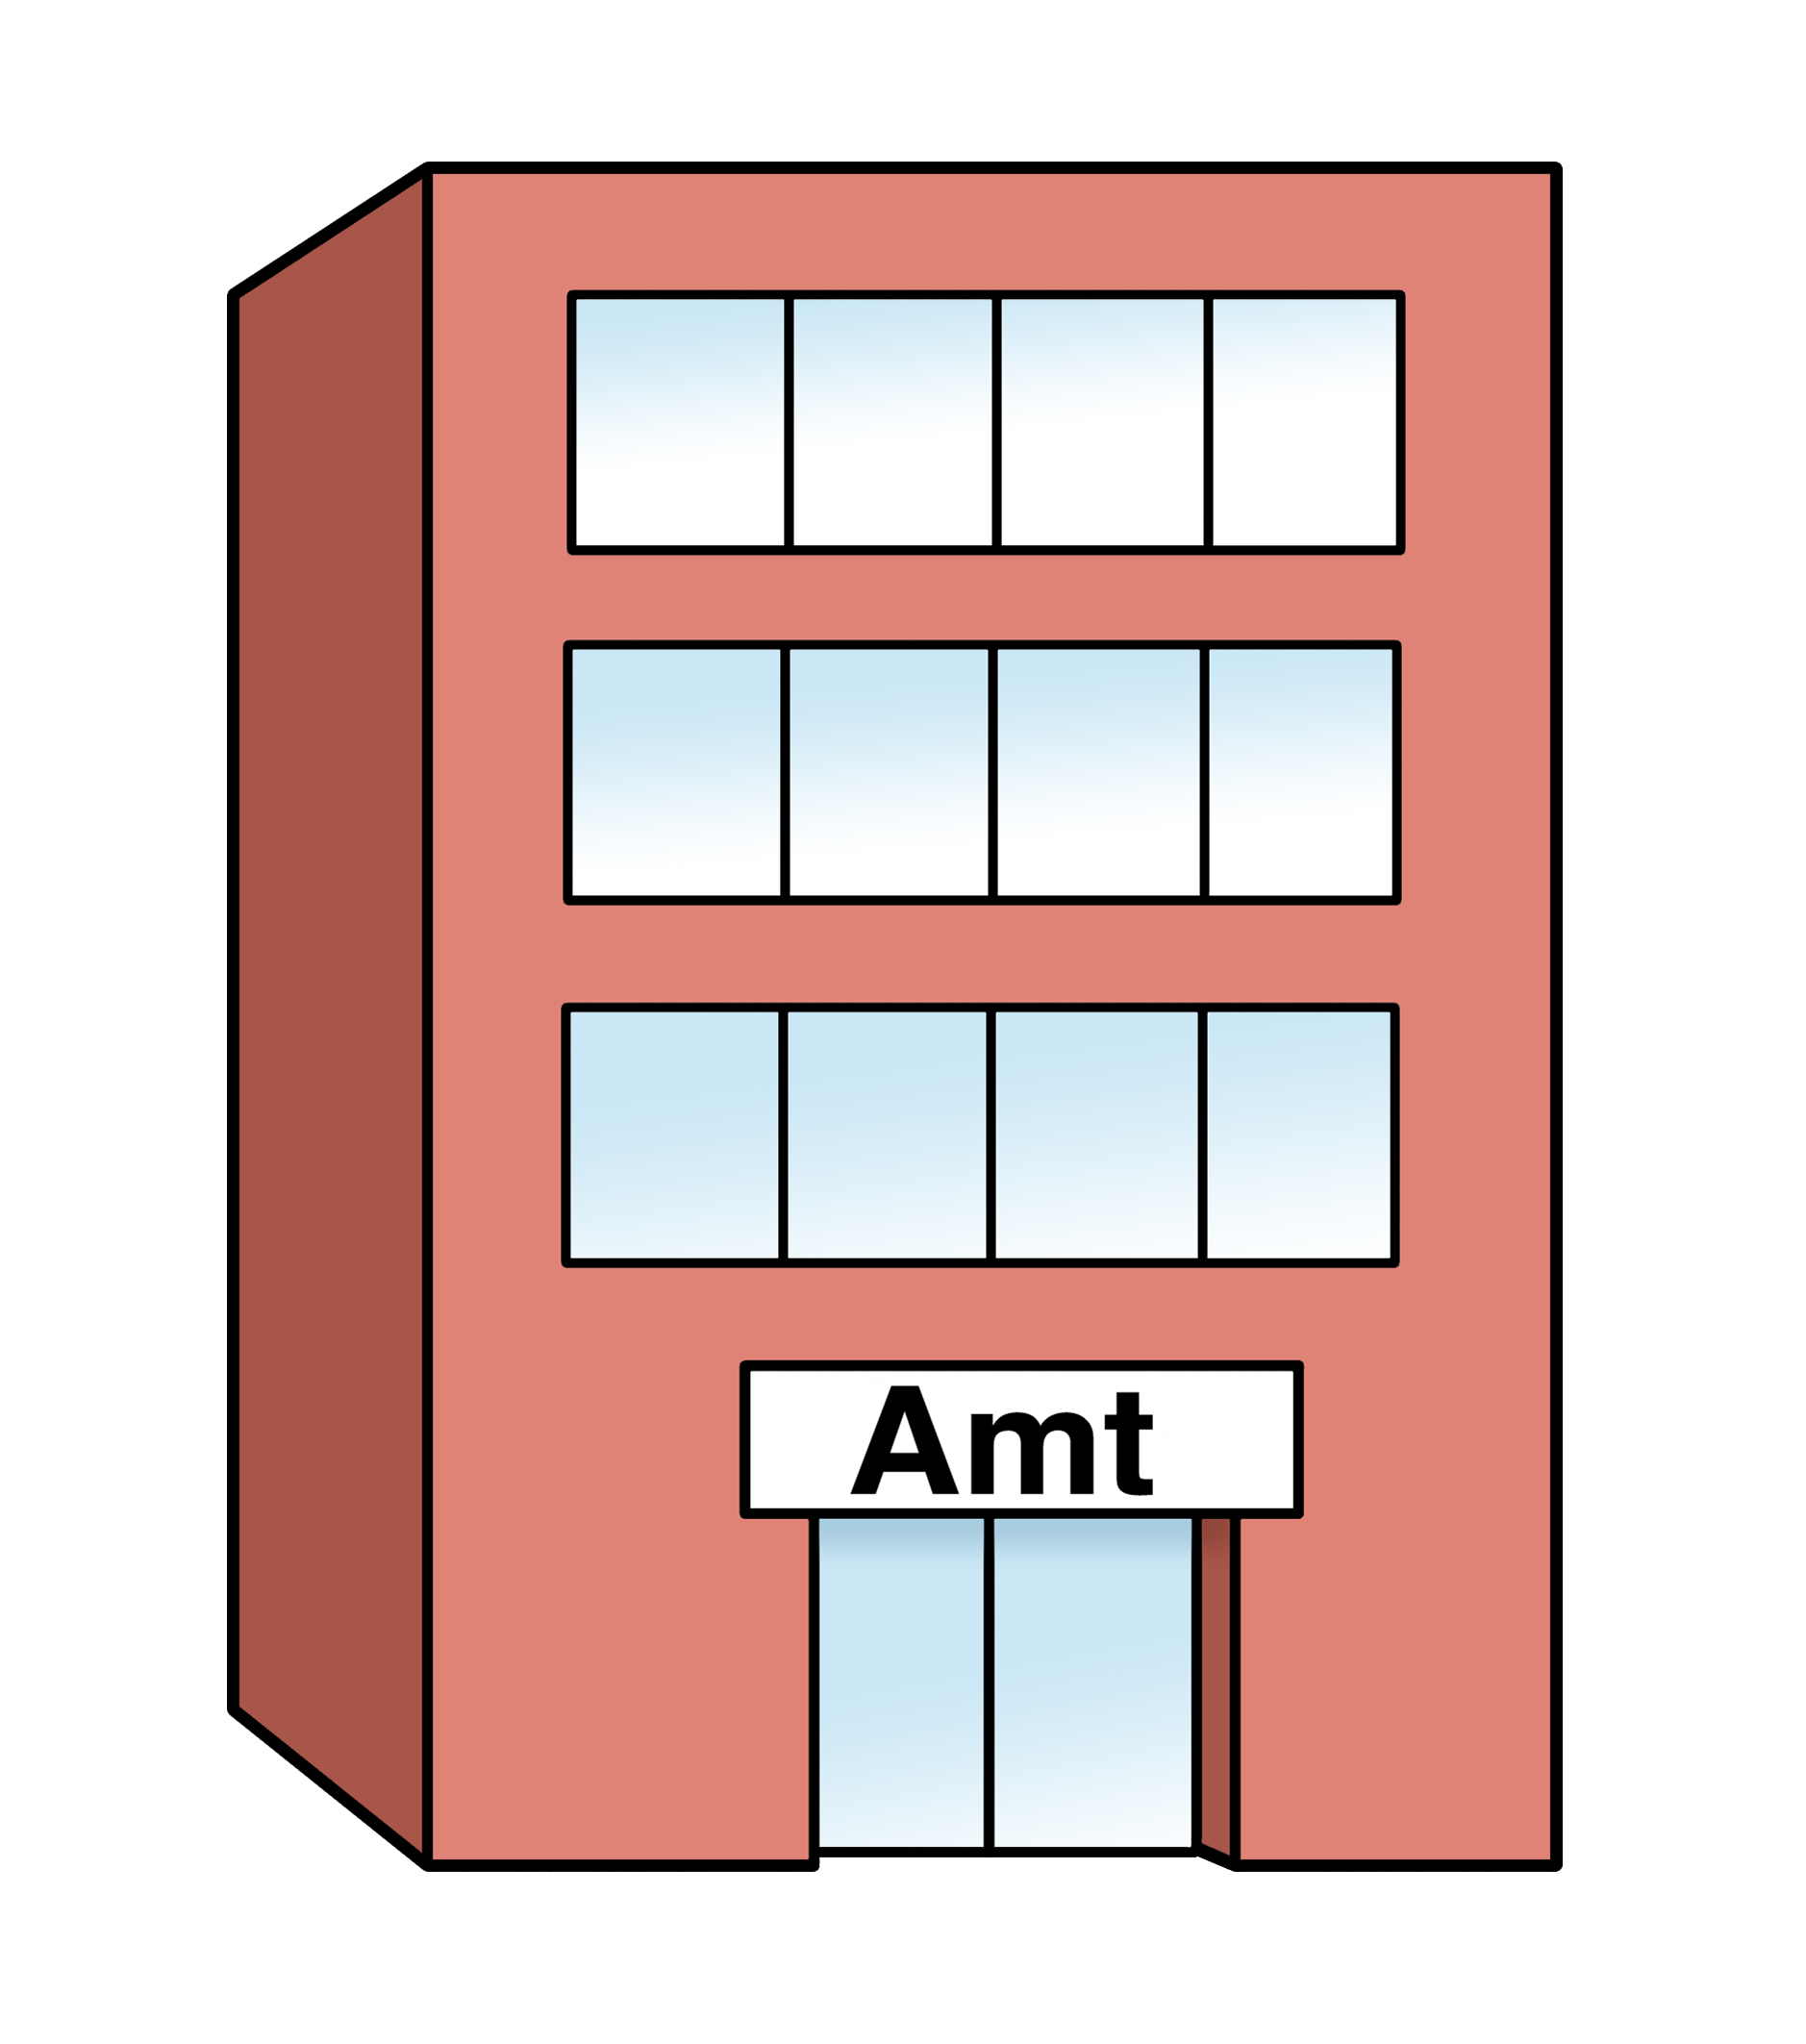 Zeichnung eine Gebäudes, das ein Amt darstellen soll